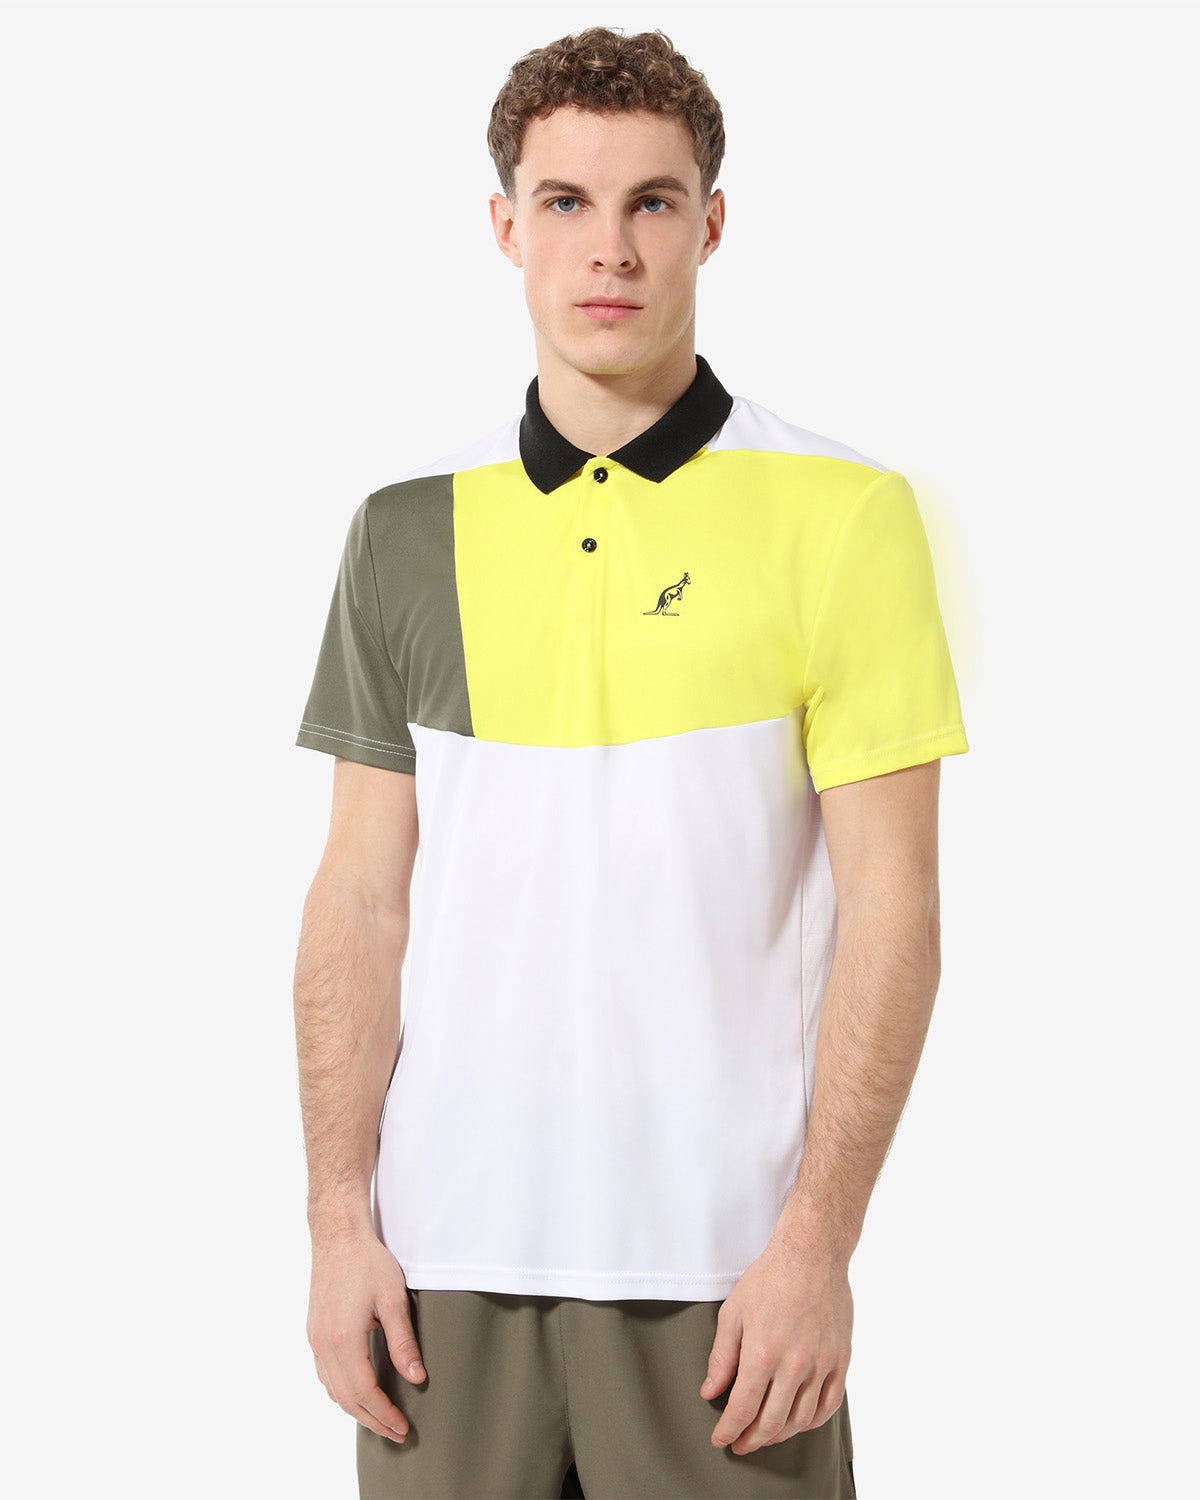 Color Block Polo Shirt: Australian Tennis